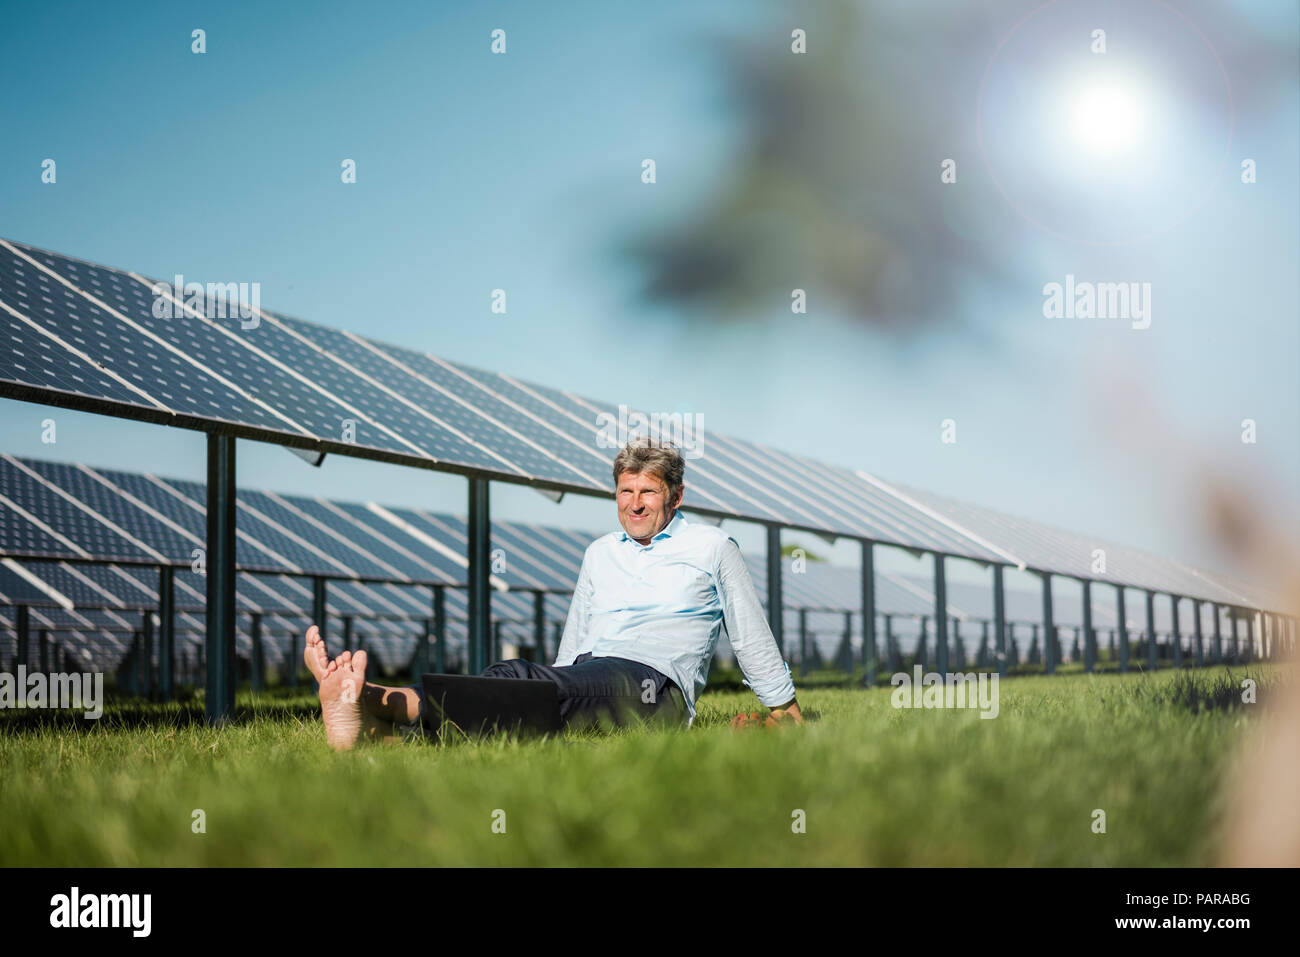 Coppia uomo seduto a piedi nudi sul prato, impianto solare Foto Stock